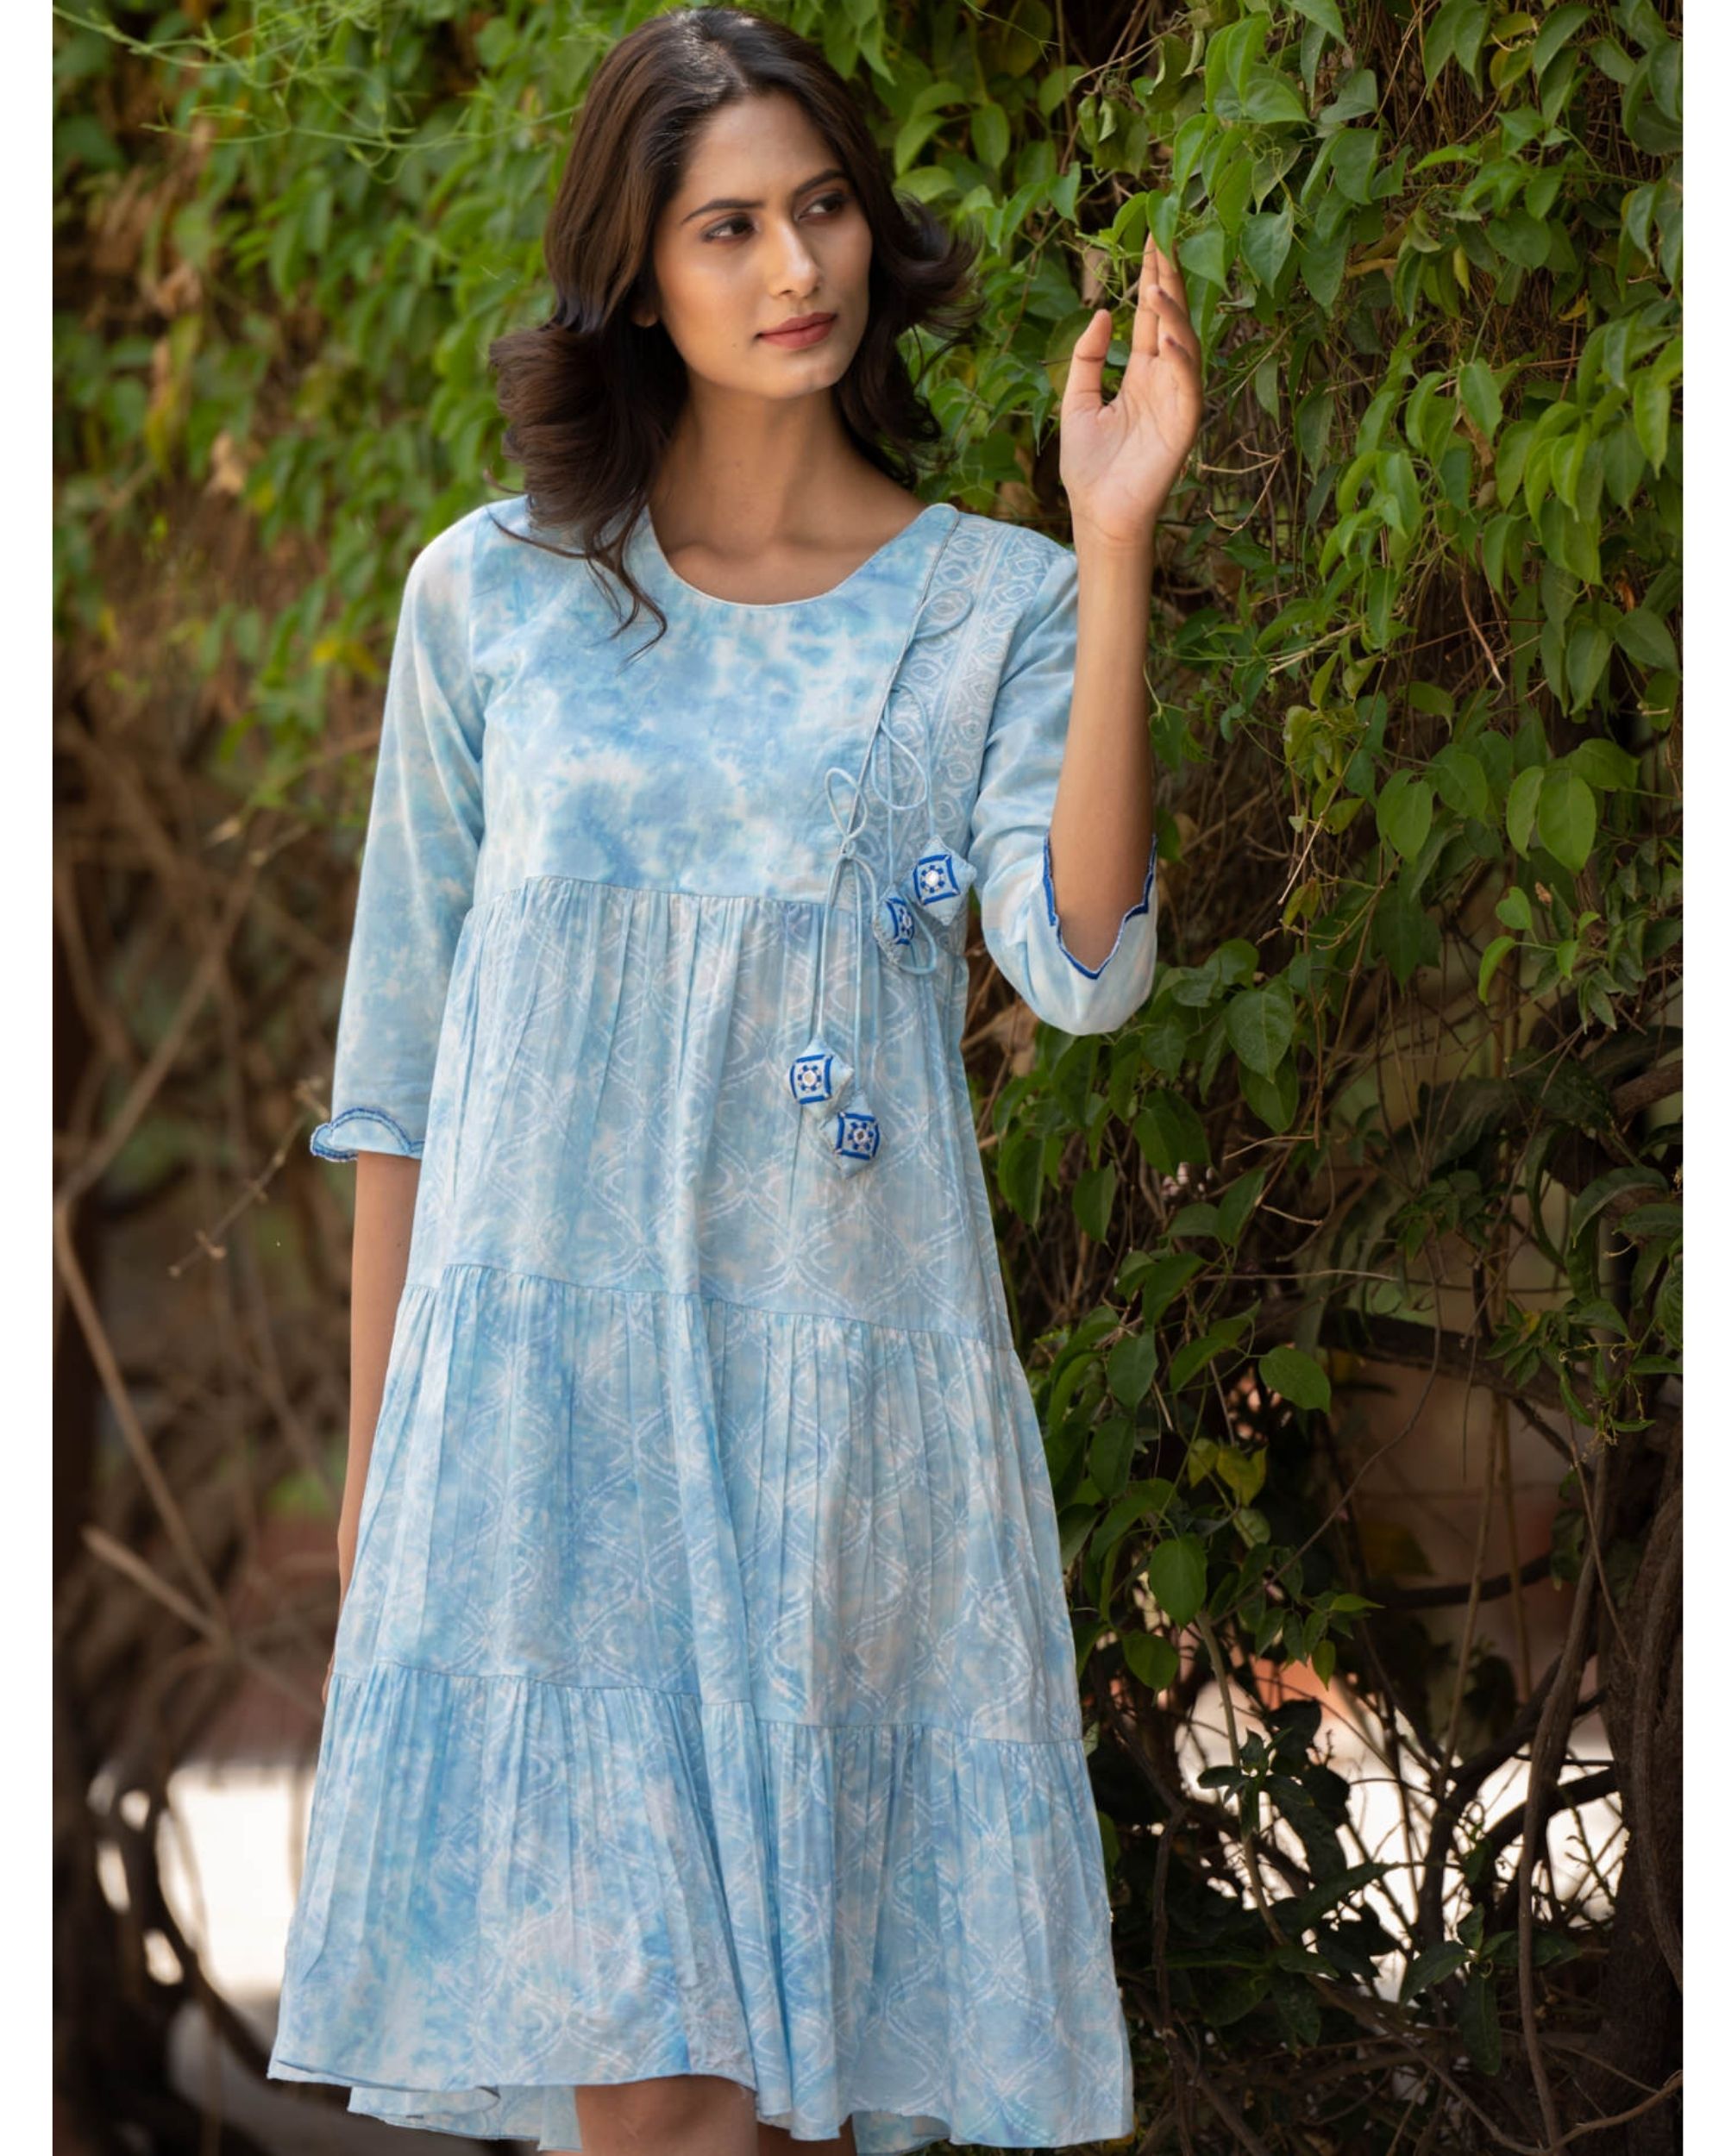 Sky blue anarkali dress by Chappai